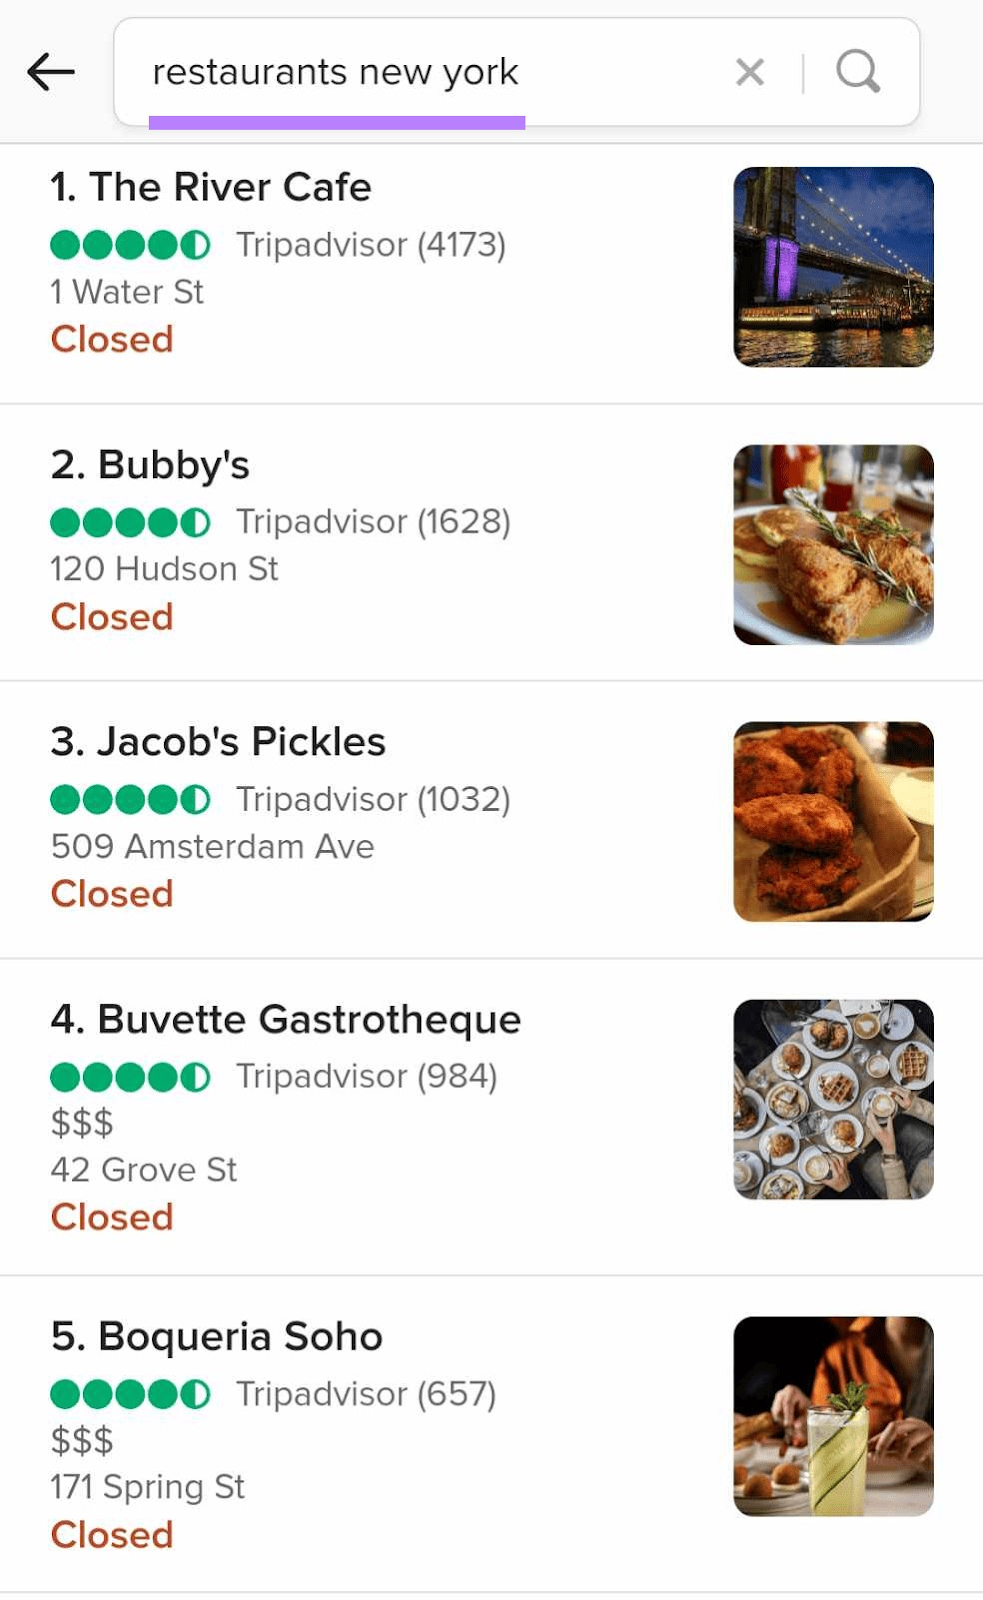 Les résultats de DuckDuckGo pour « restaurant new york » incluent les avis Tripadvisor